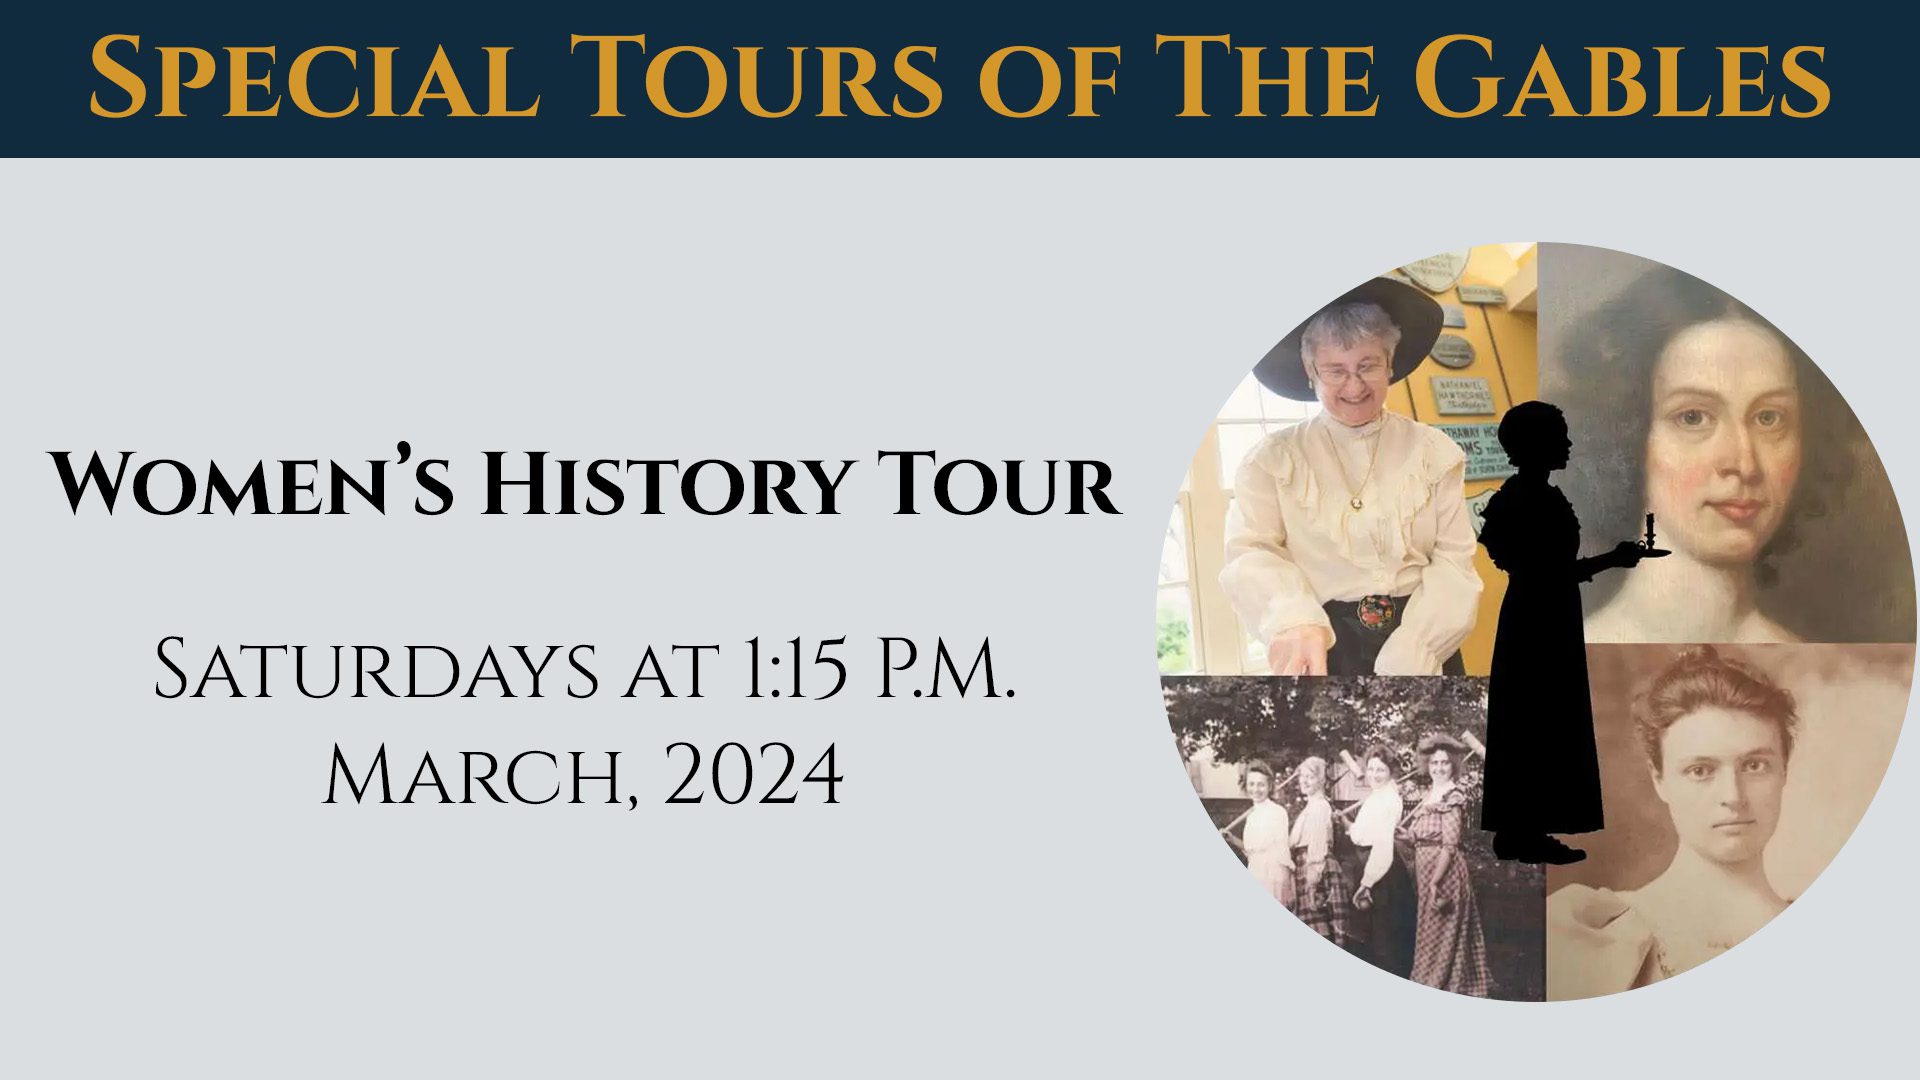 Unique Women's History Tours in Gables.